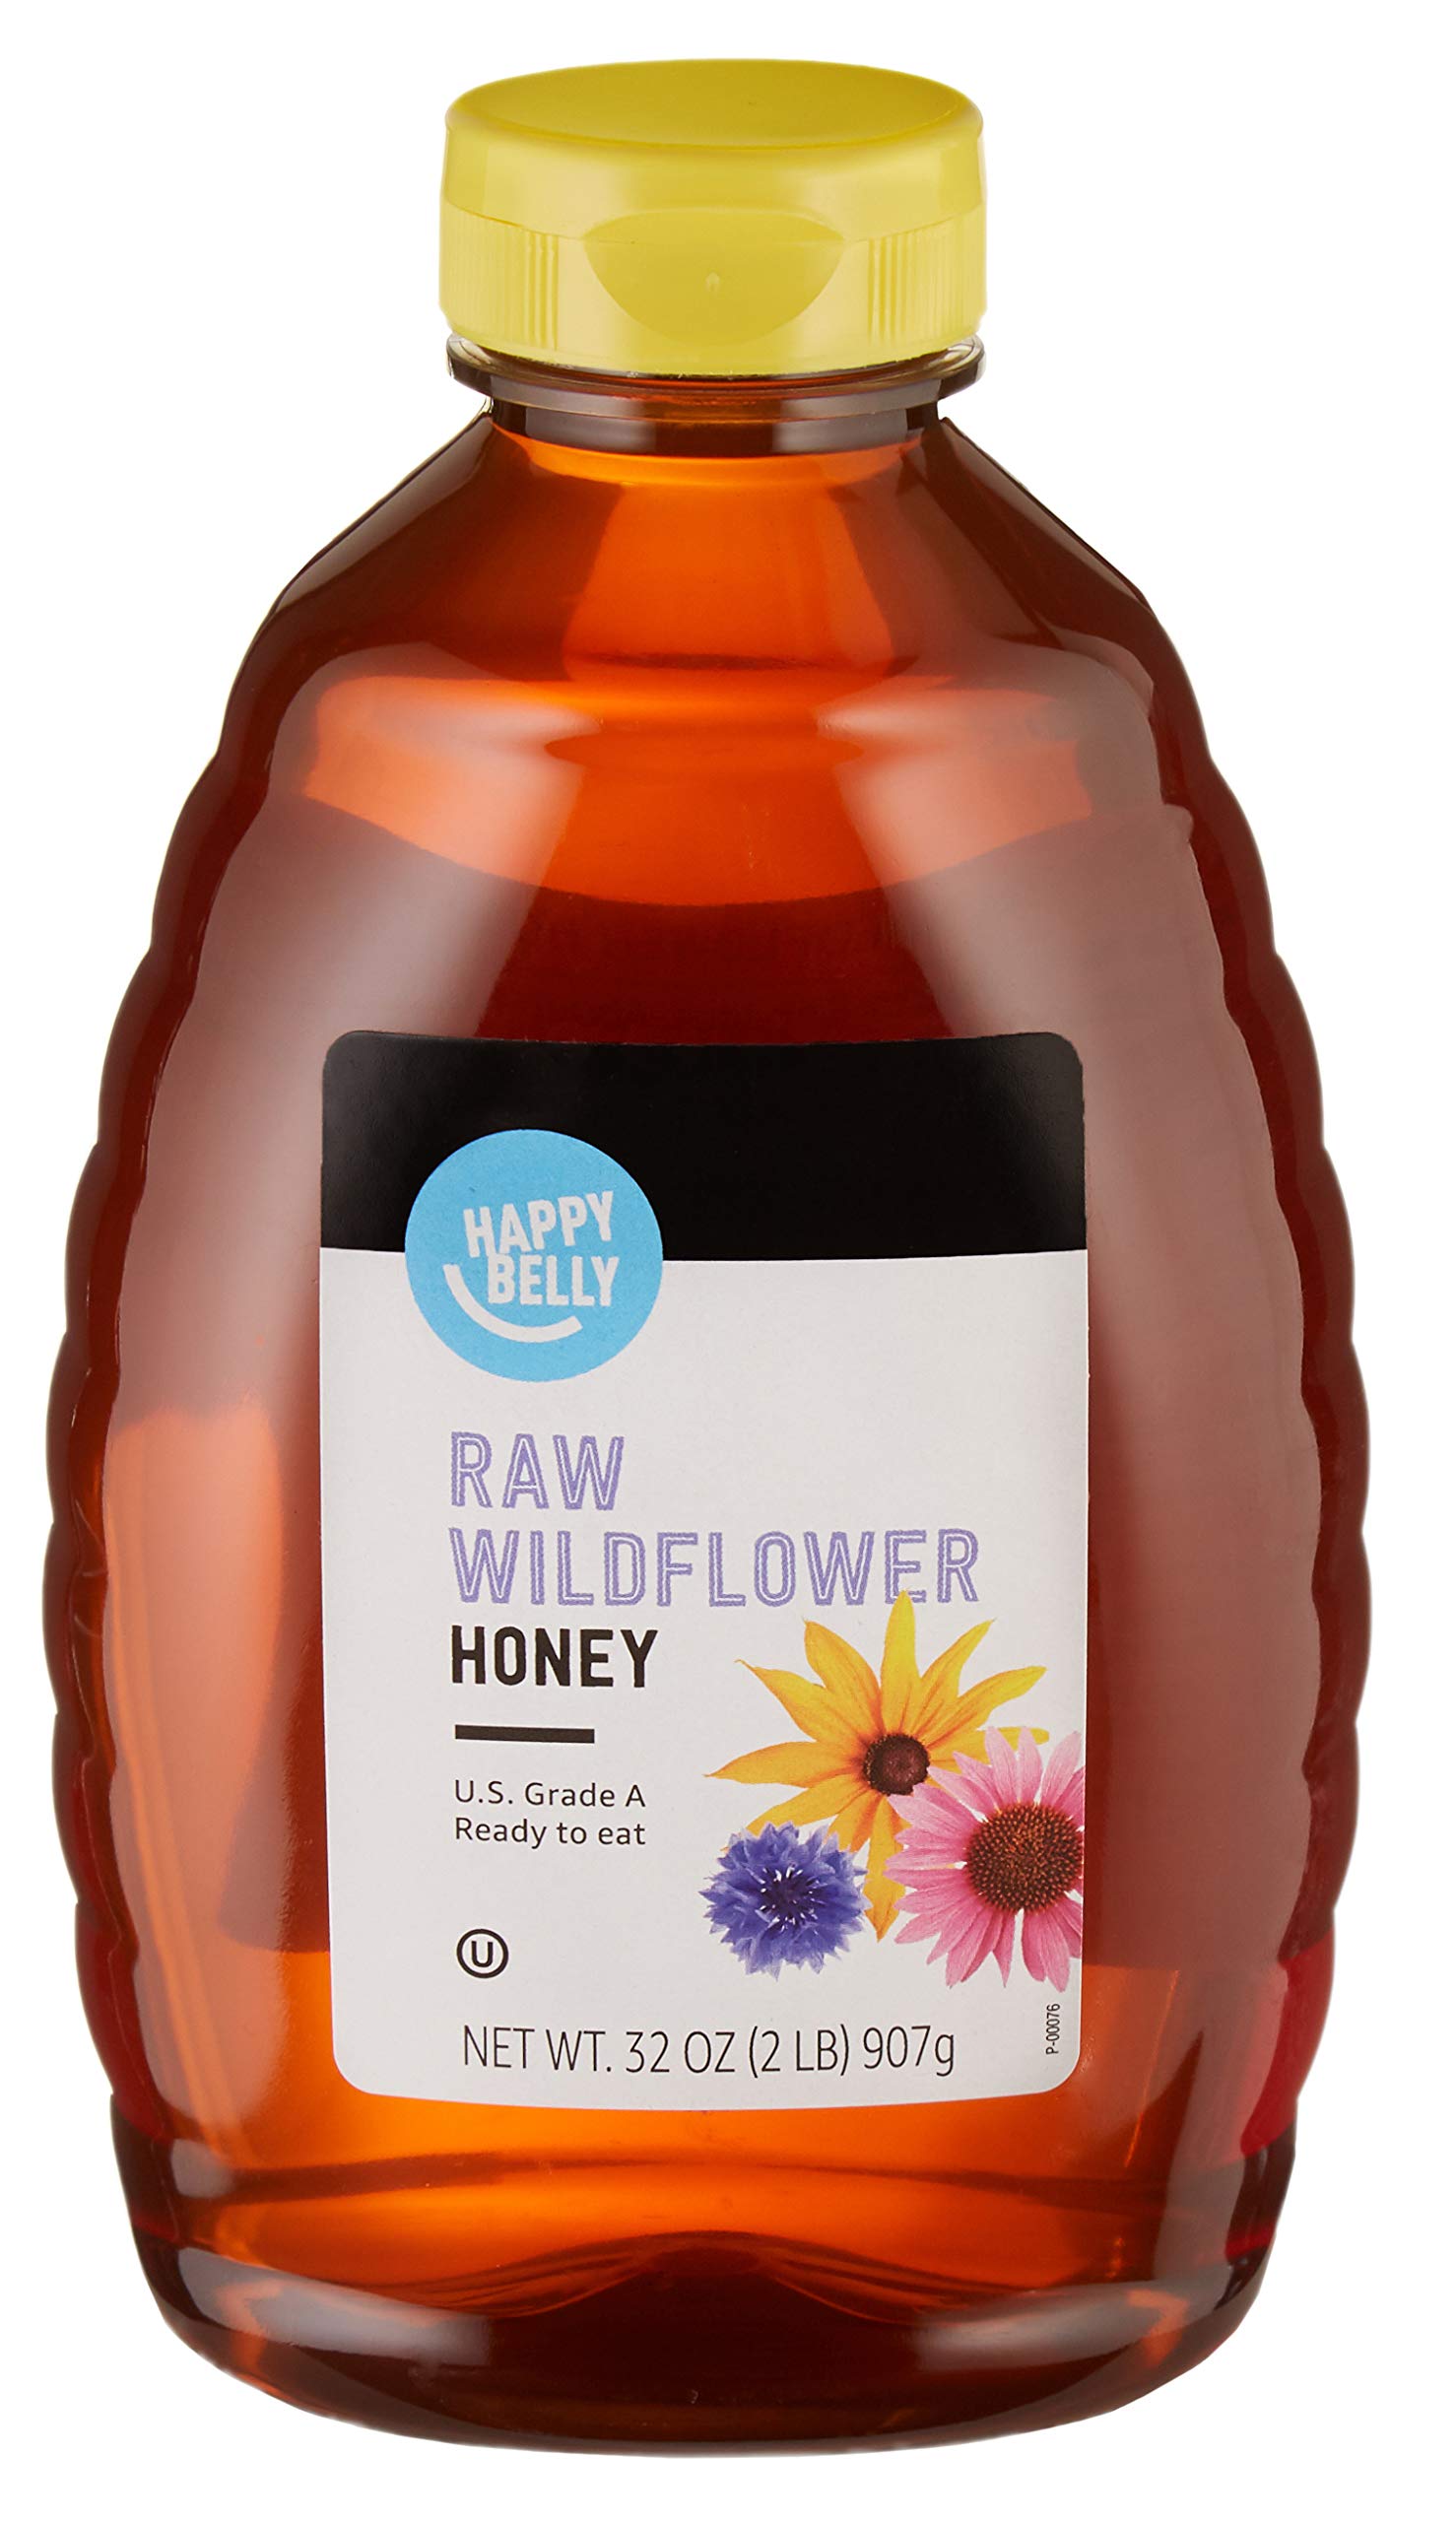 Happy Belly Raw Wildflower Honey, 32 oz $6 Amazon S&S